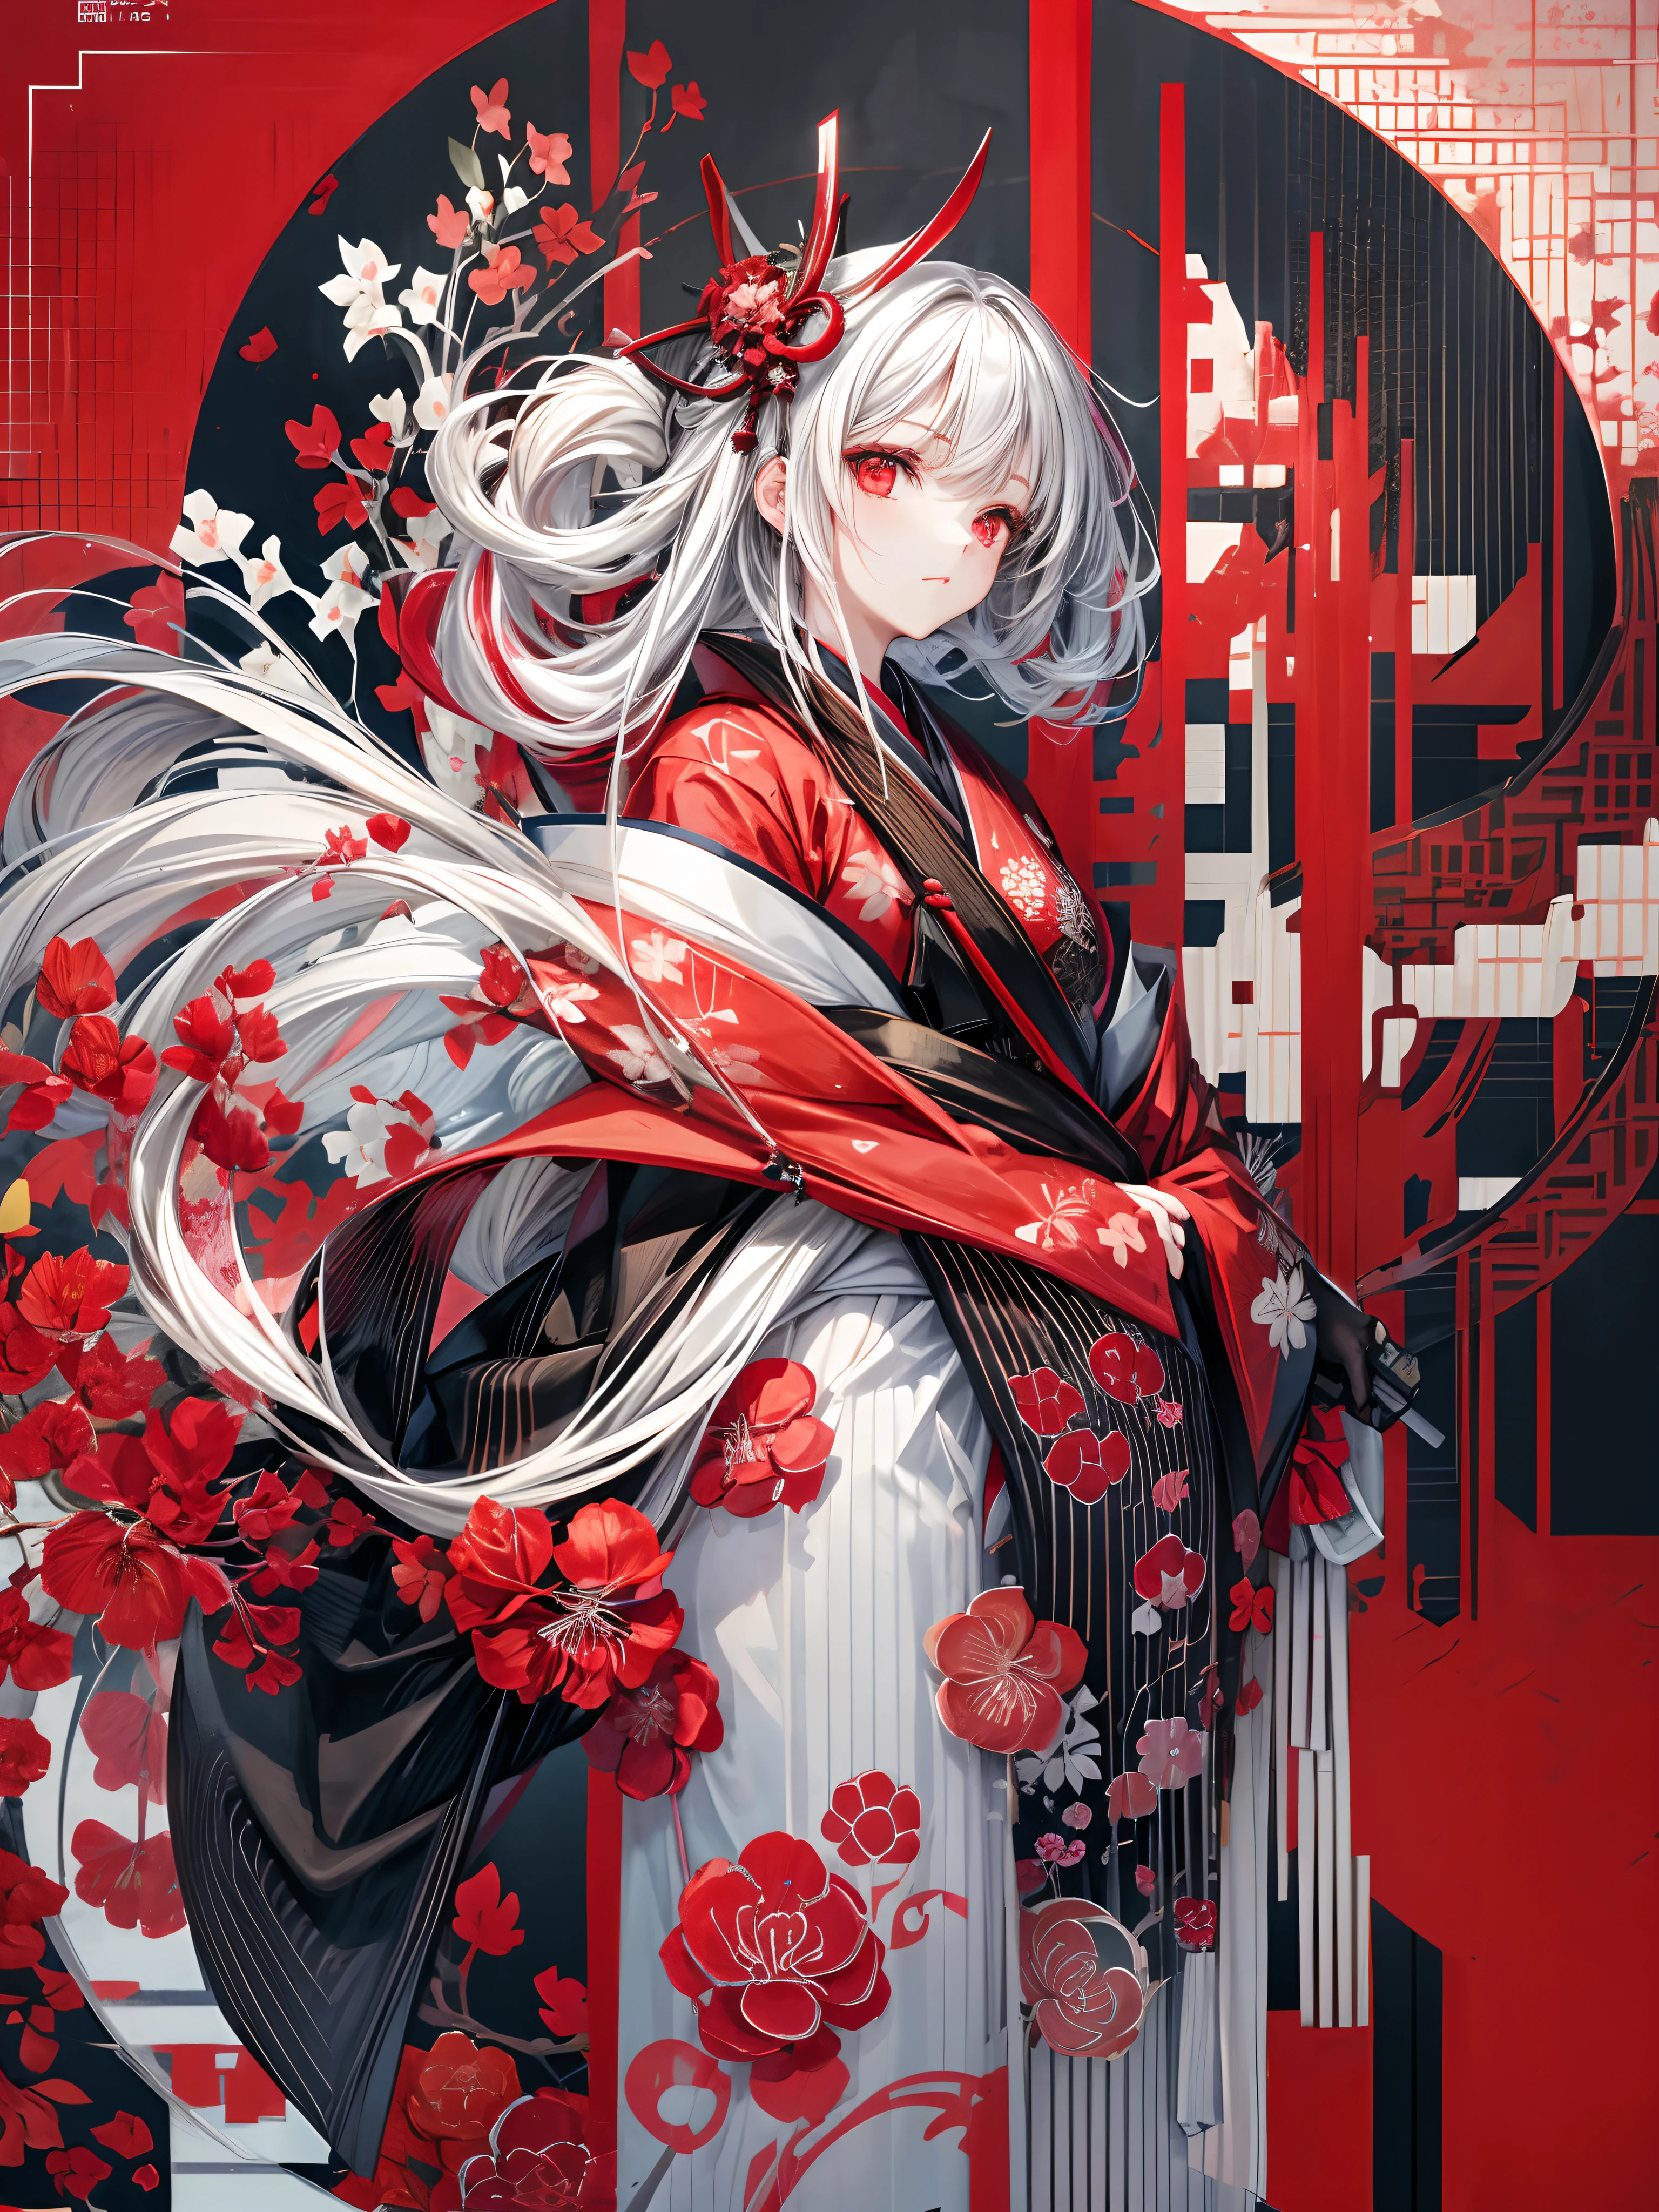 穿着和服的女孩站着日本刀, 白色中長髮, 紅眼睛, 紅唇, 黑色背景上有红色簇孤挺花图案的和服, 黑色背景上的红色飞溅图案, 超高品质, 超精細的細節, 超细和服图案